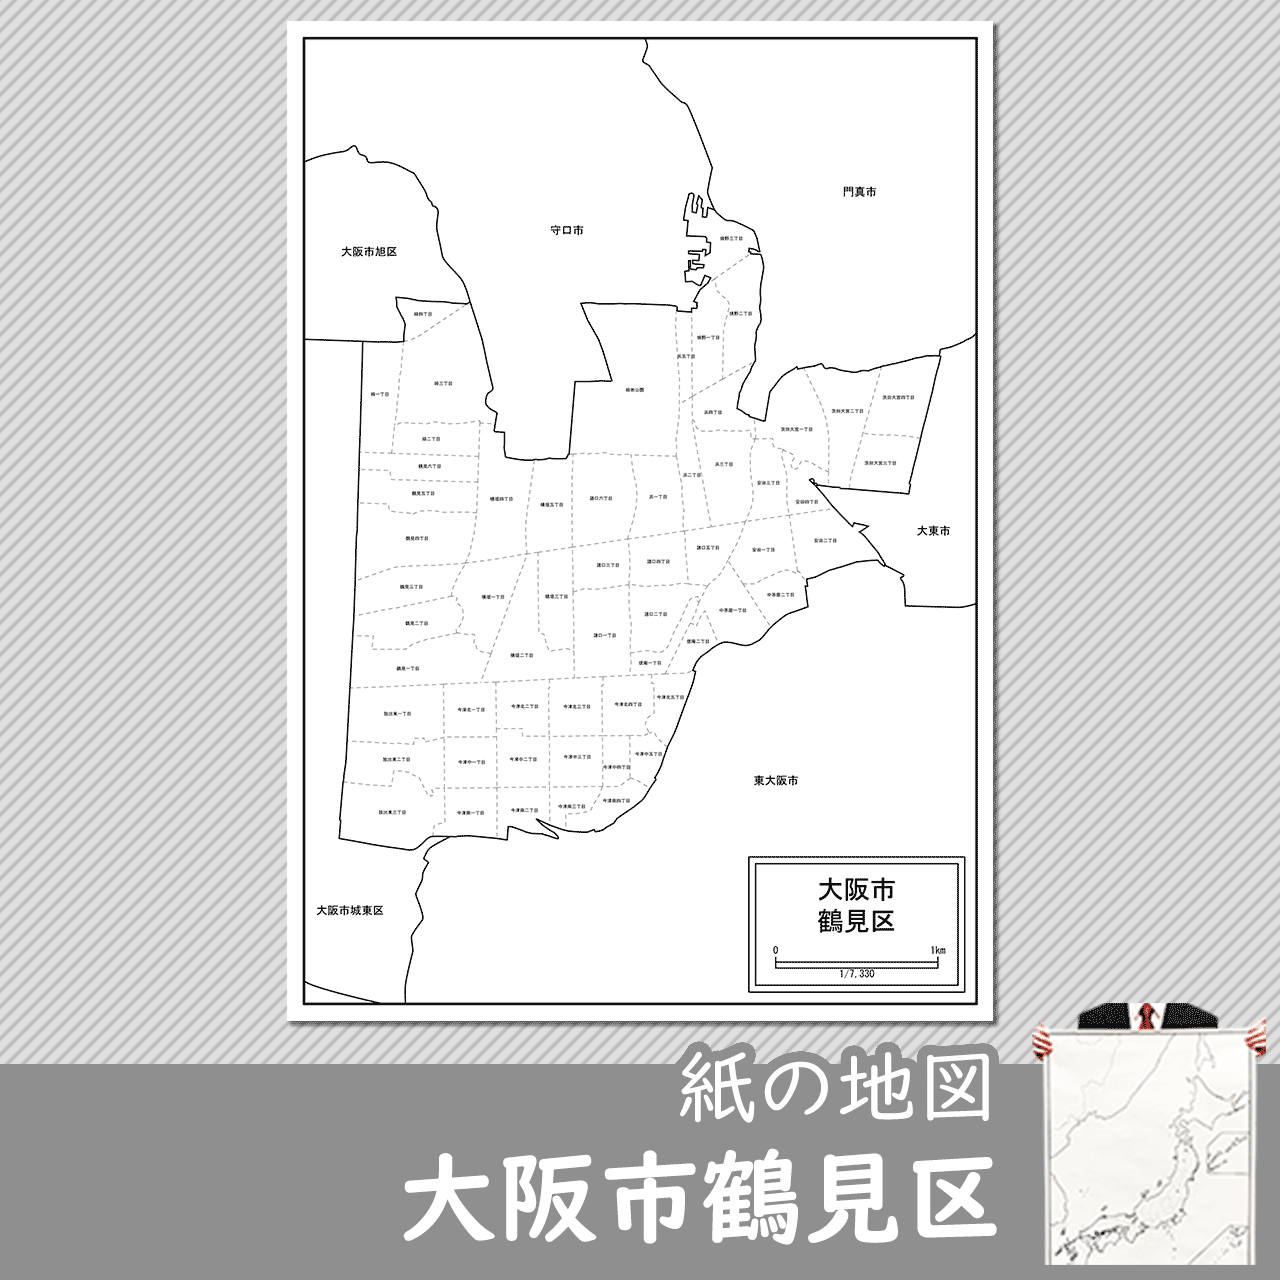 大阪市鶴見区の紙の白地図